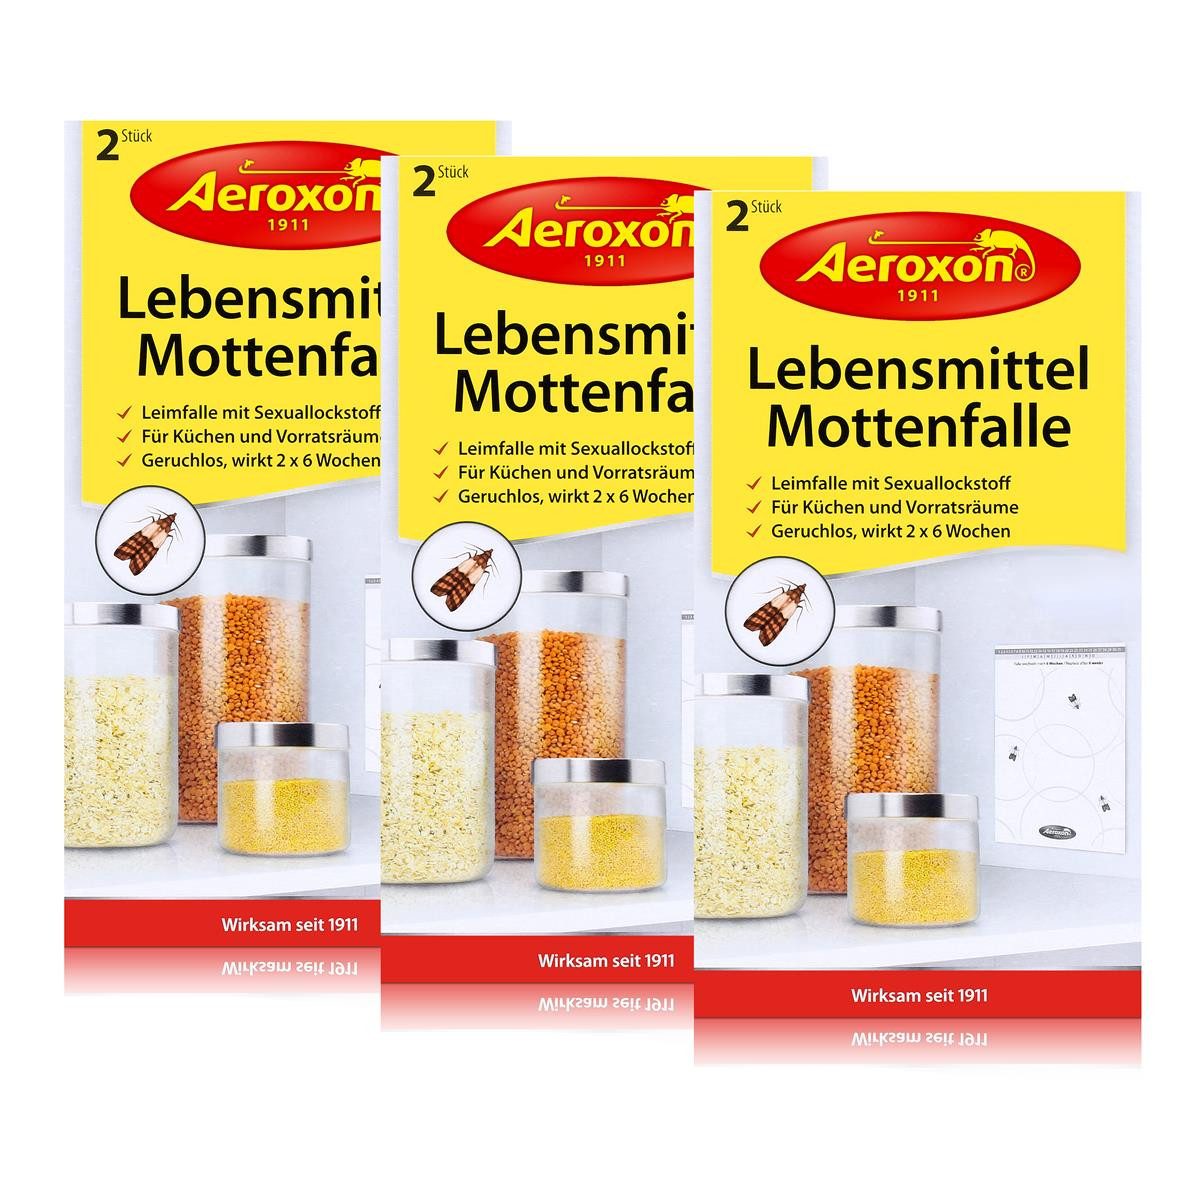 Aeroxon Insektenfalle Aeroxon Lebensmittel Mottenfalle 2 Stück - Für Küchen & Vorratsräume (